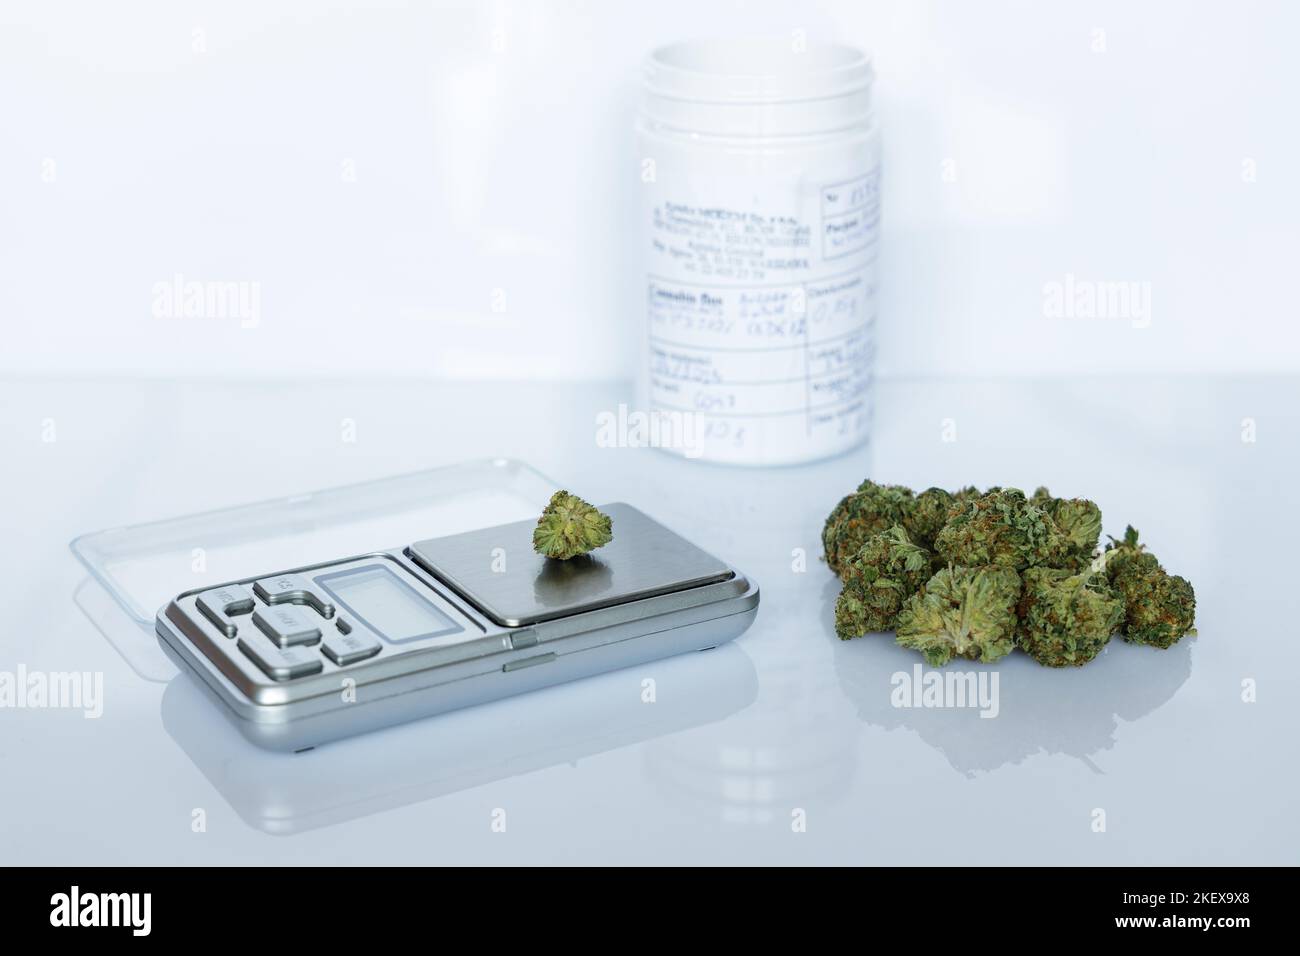 Cannabisflossen, medizinisches Marihuana stapeln sich neben einer Präzisionswaage und einem weißen Behälter, eine sichere Möglichkeit, Medikamente einzunehmen Stockfoto